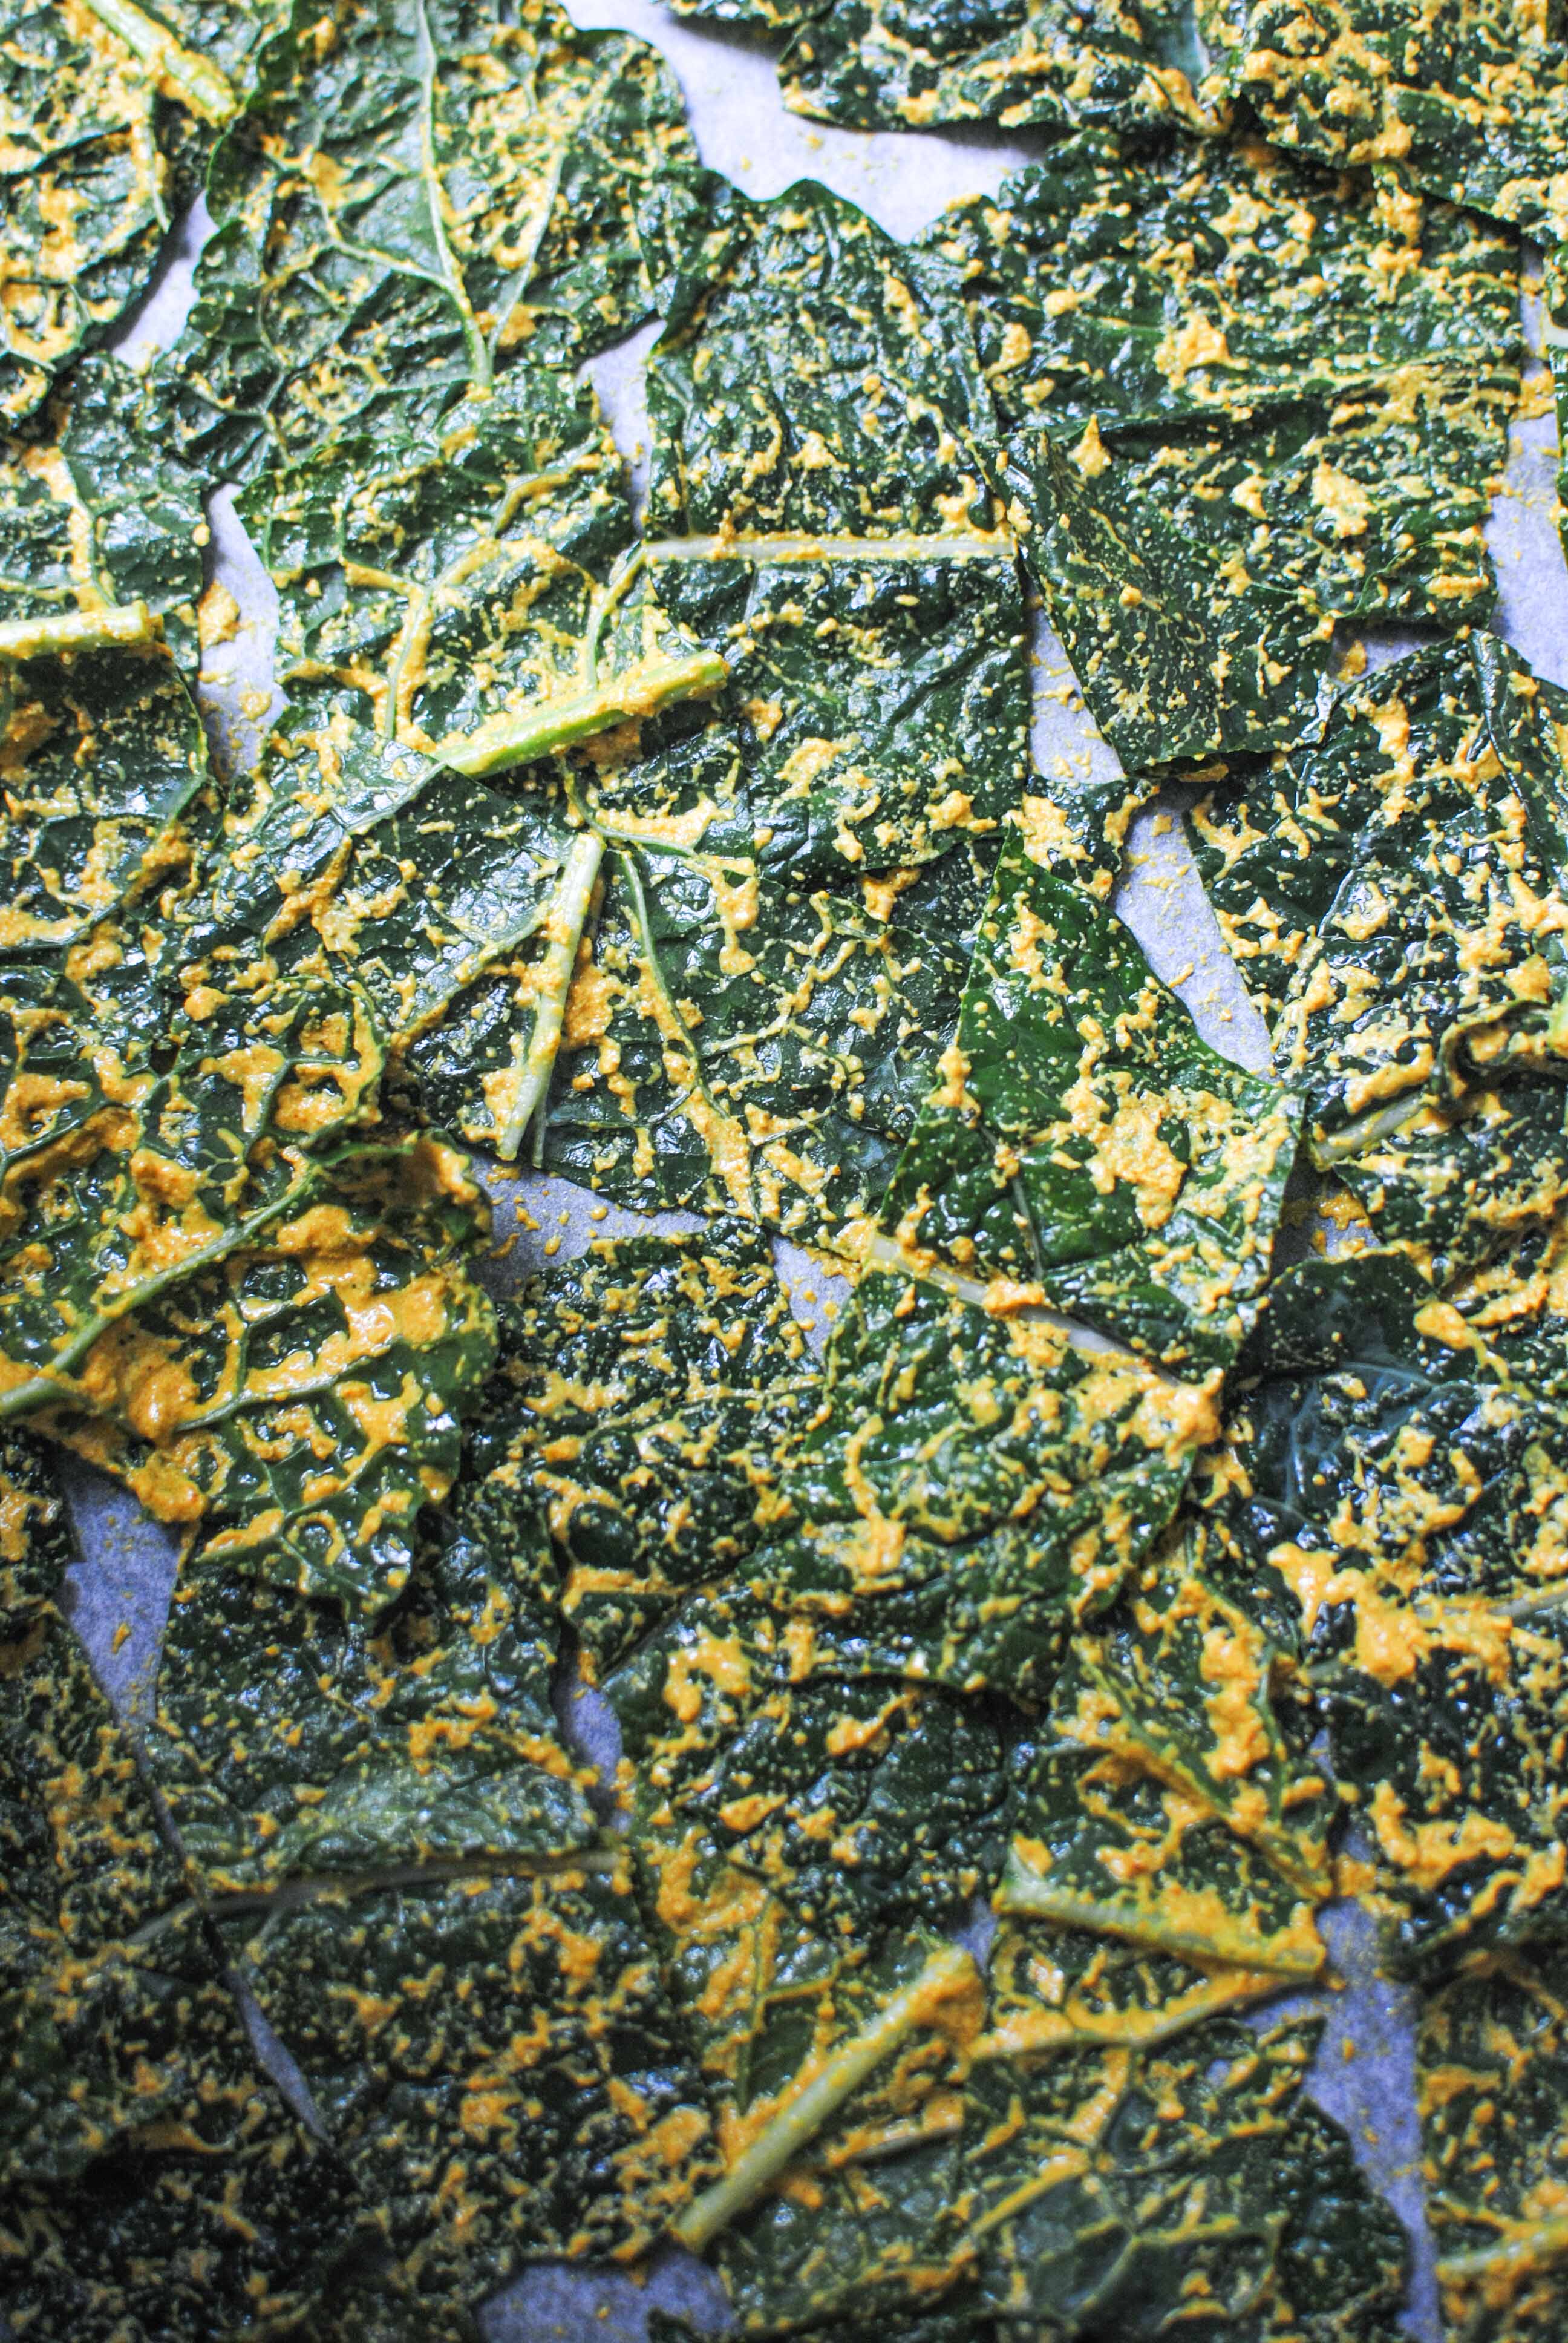 curry kale chips | please consider | joana limao